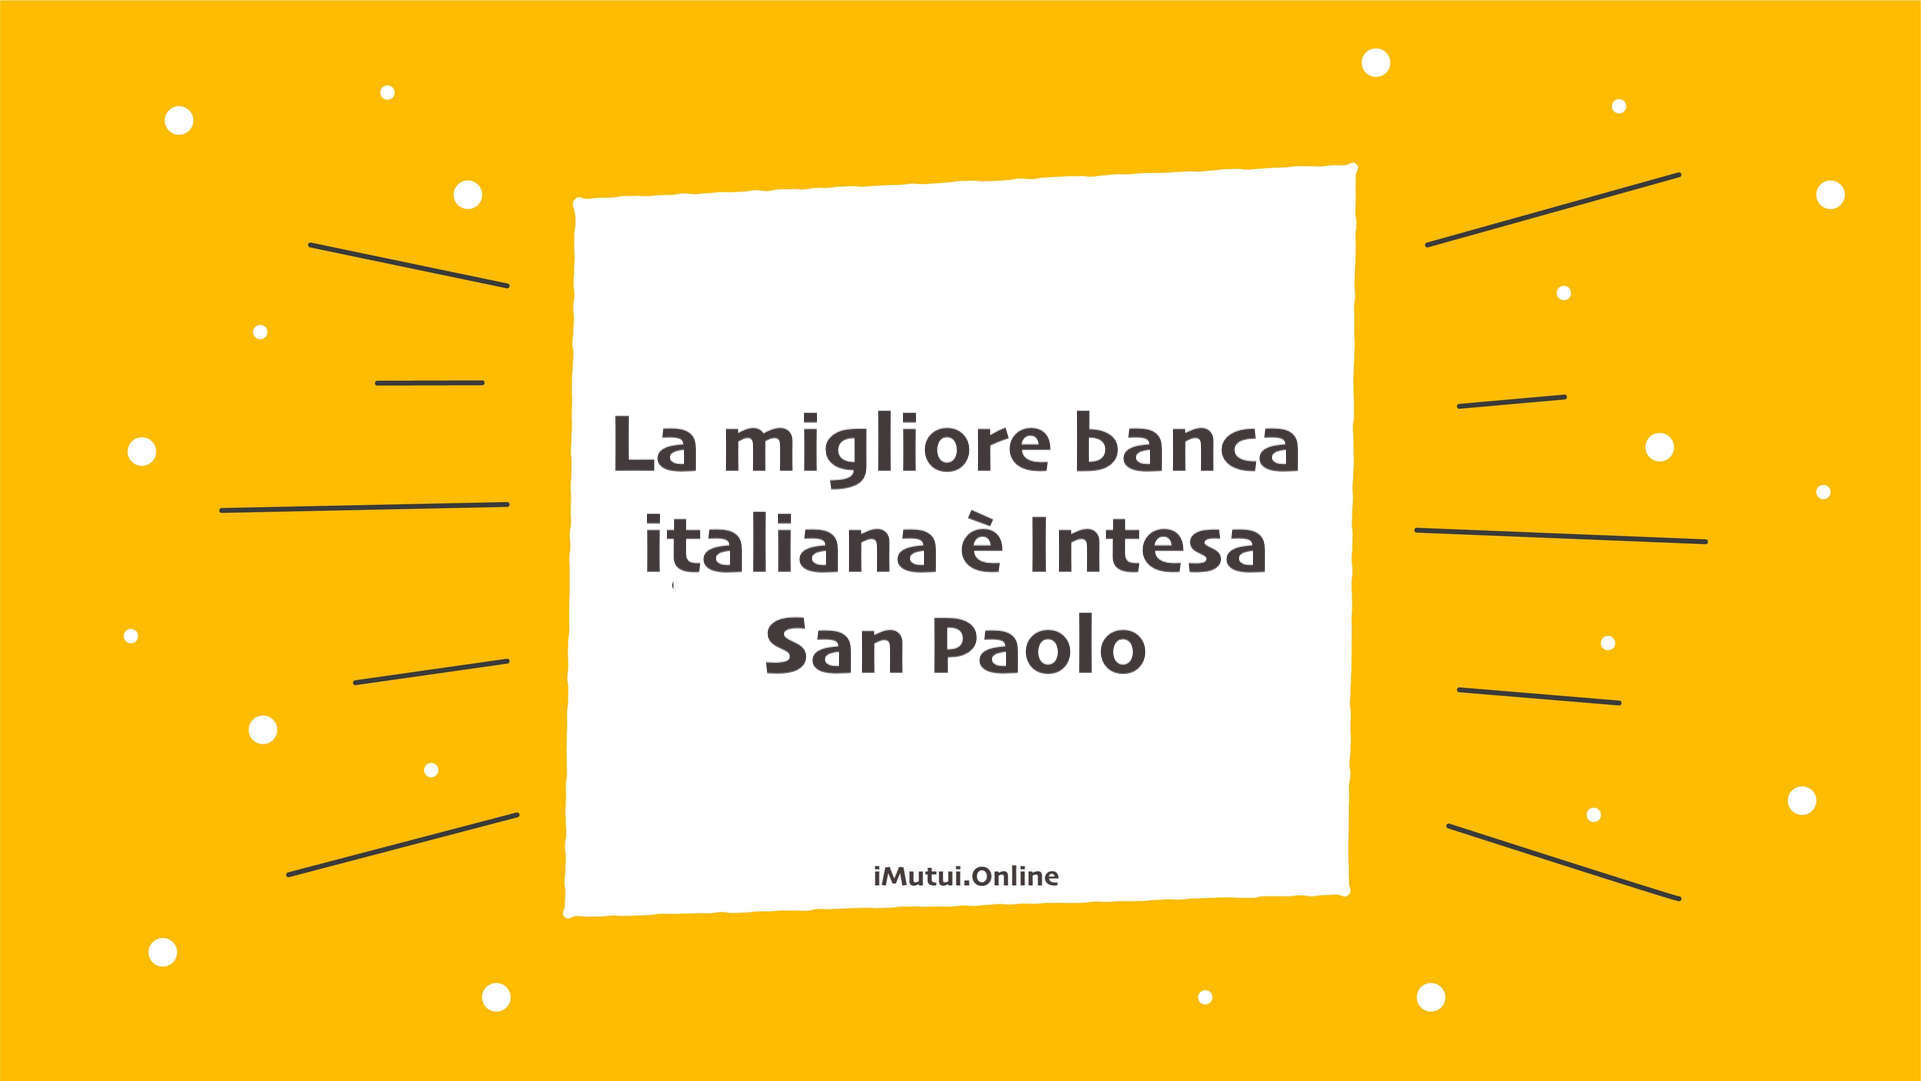 La migliore banca italiana è Intesa San Paolo